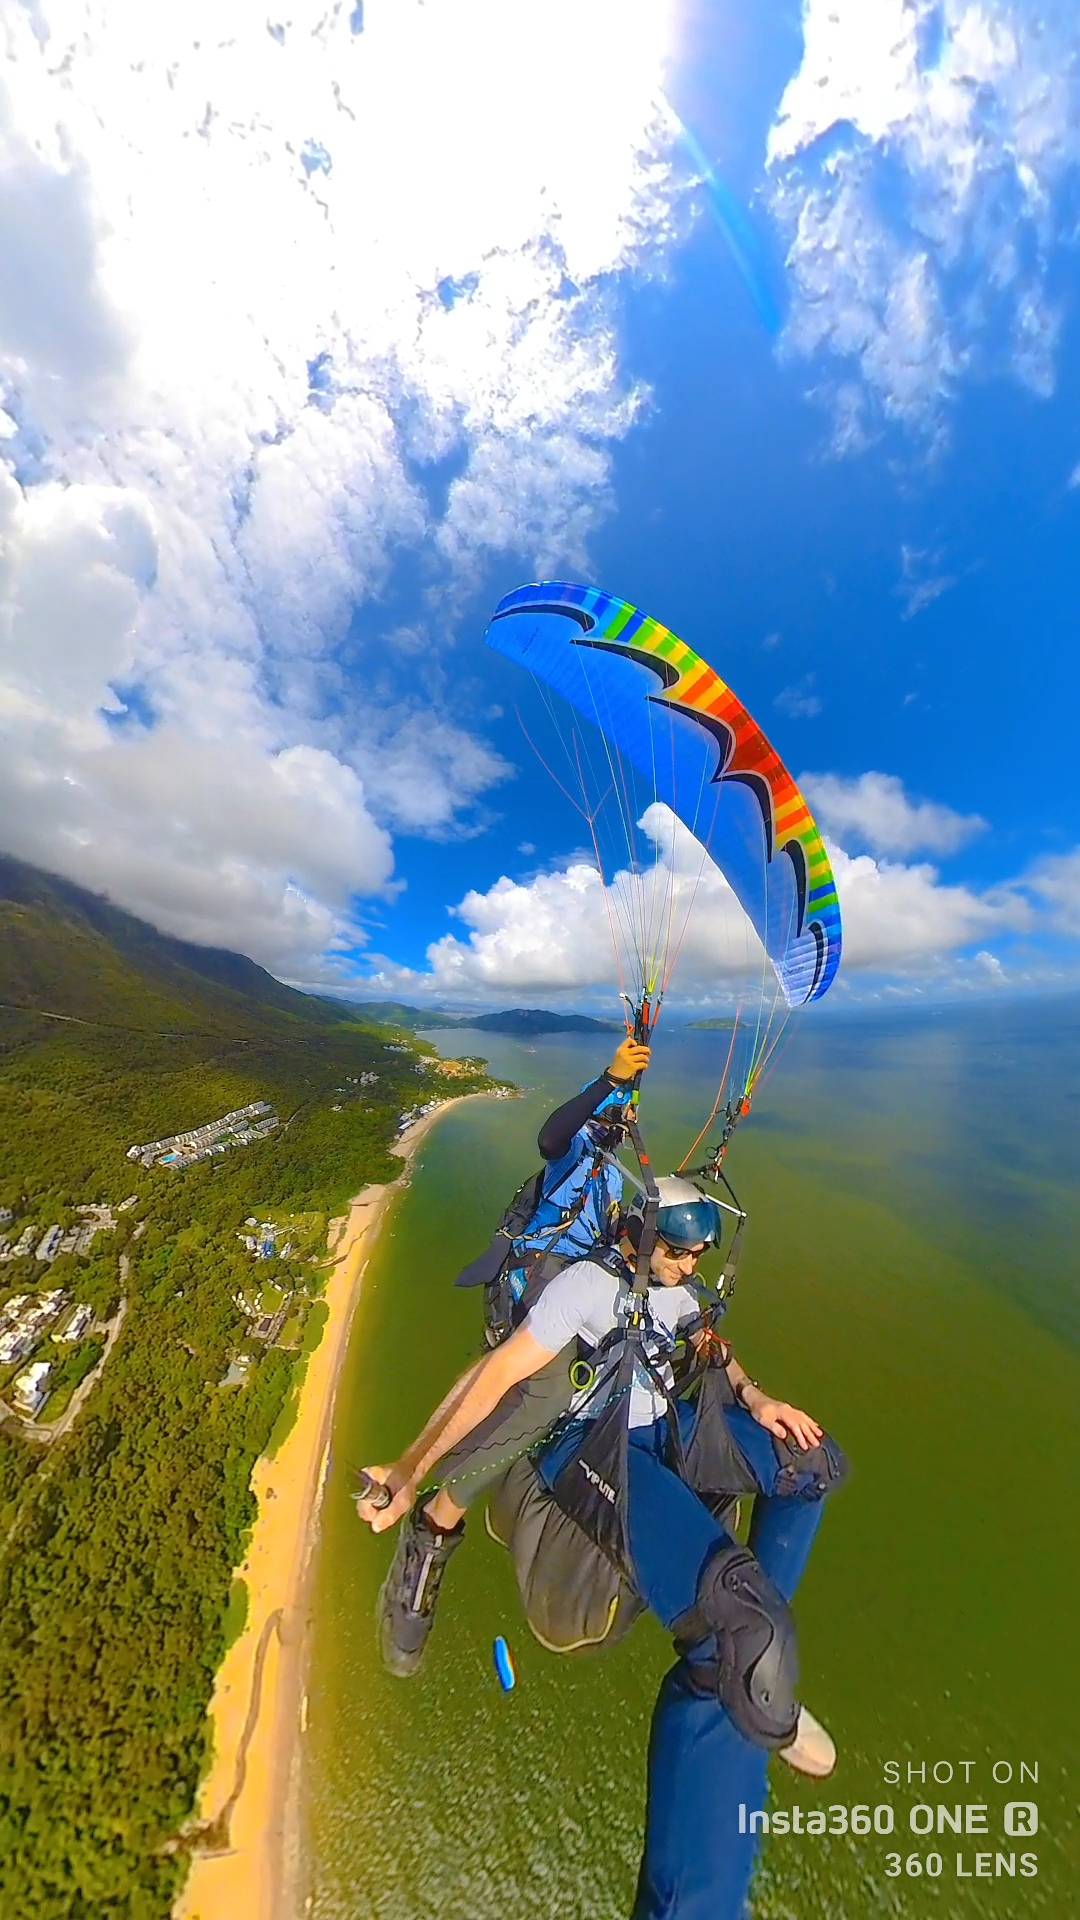 X Fly Paragliding 【特別體驗之選】香港滑翔傘體驗飛行 Tandem paragliding experience trial 7